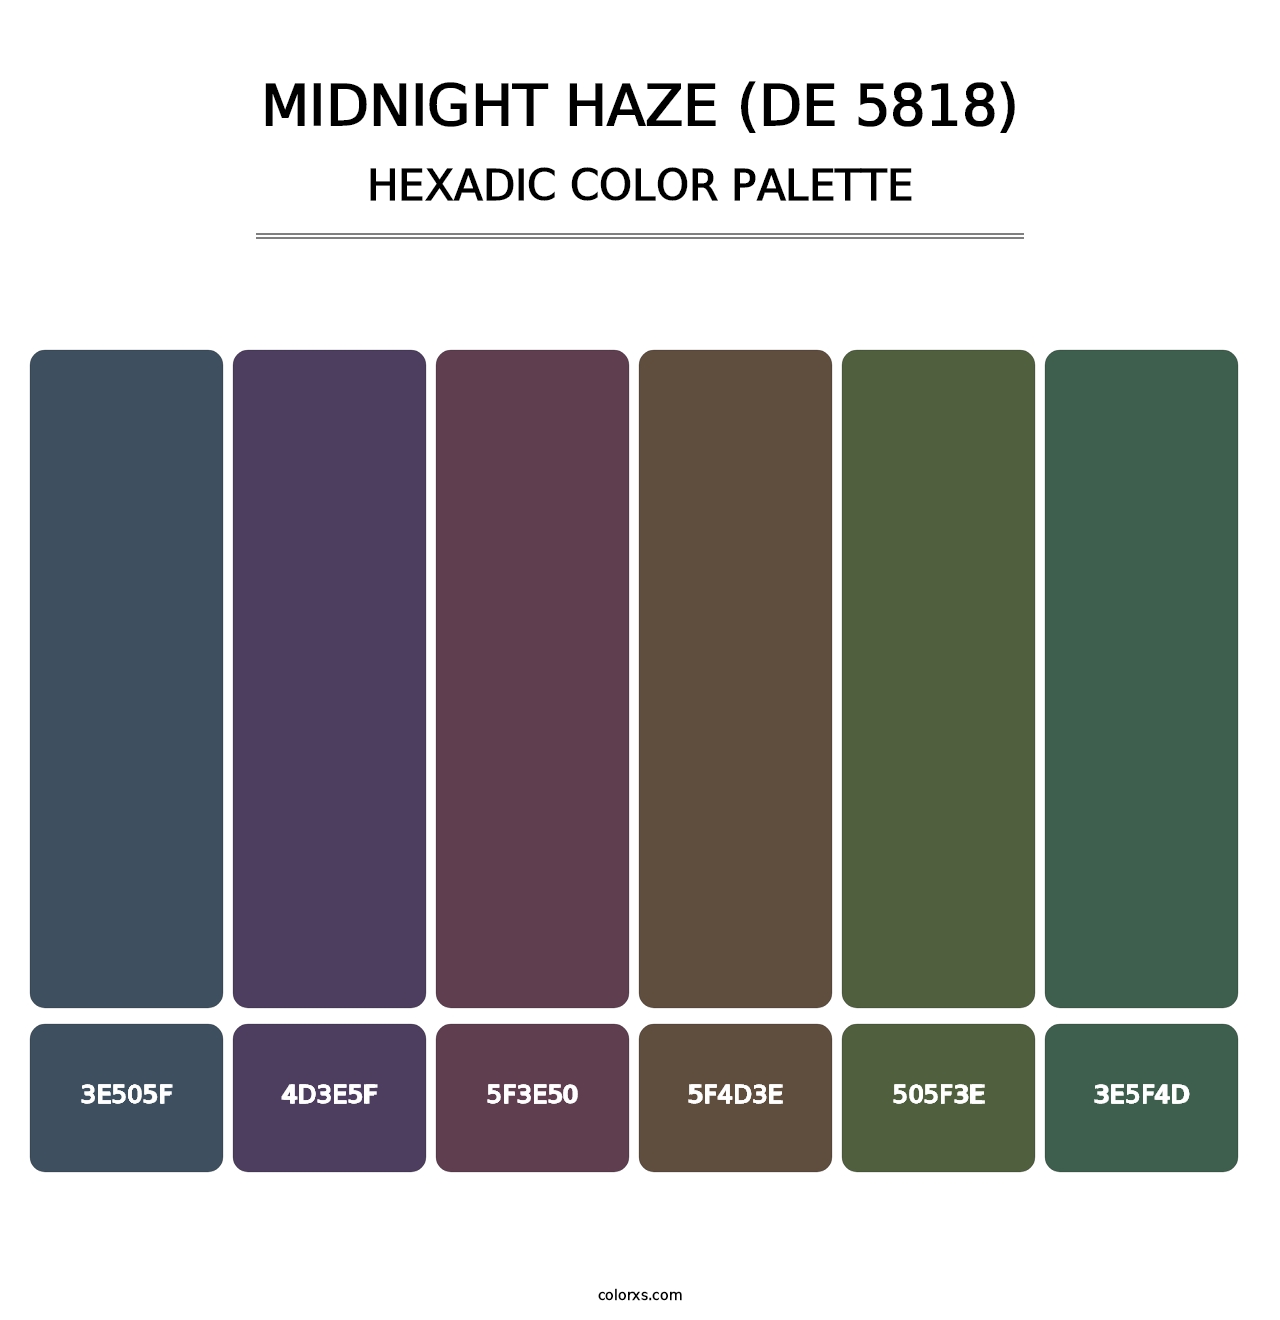 Midnight Haze (DE 5818) - Hexadic Color Palette